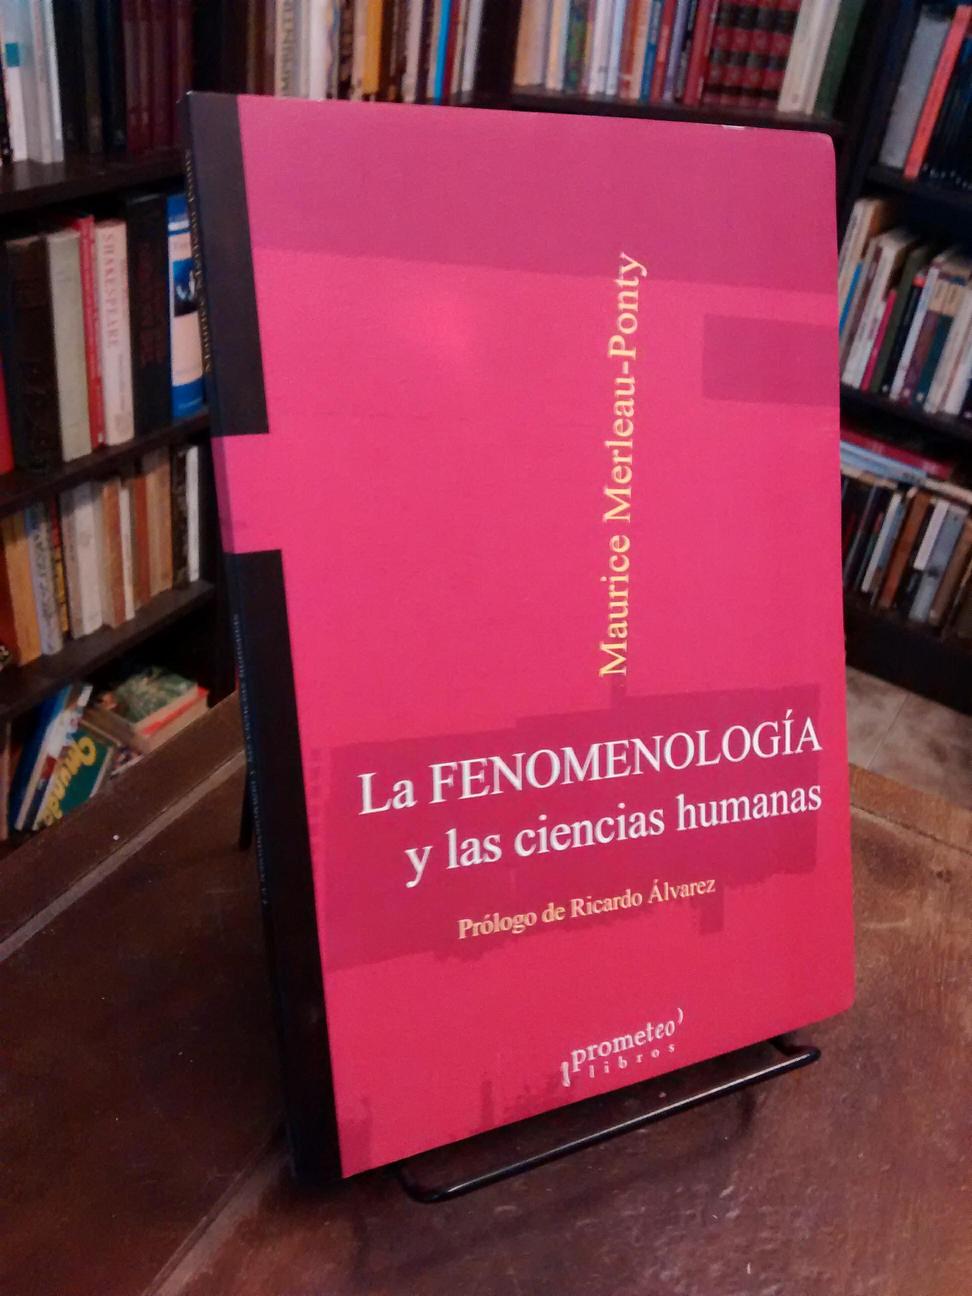 La fenomenología y las ciencias humanas - Maurice Merleau-Ponty